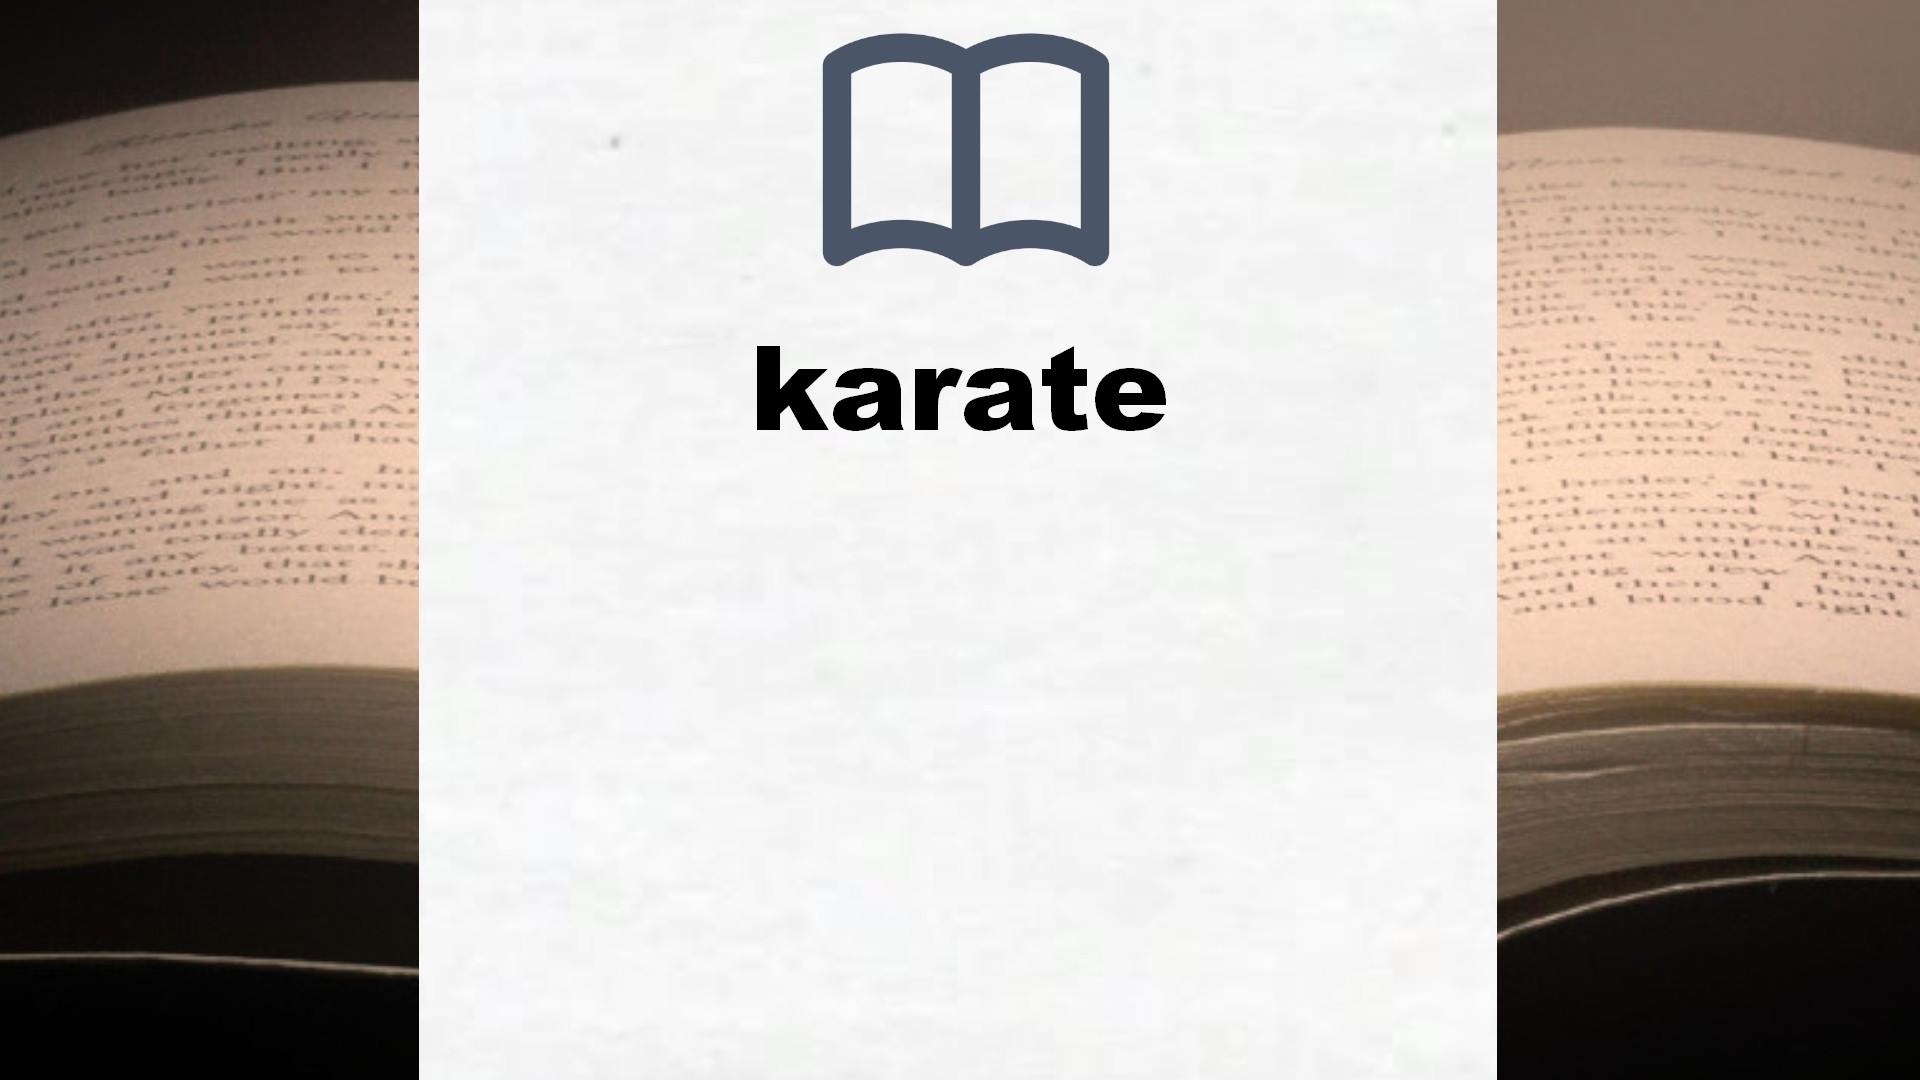 Libros sobre karate